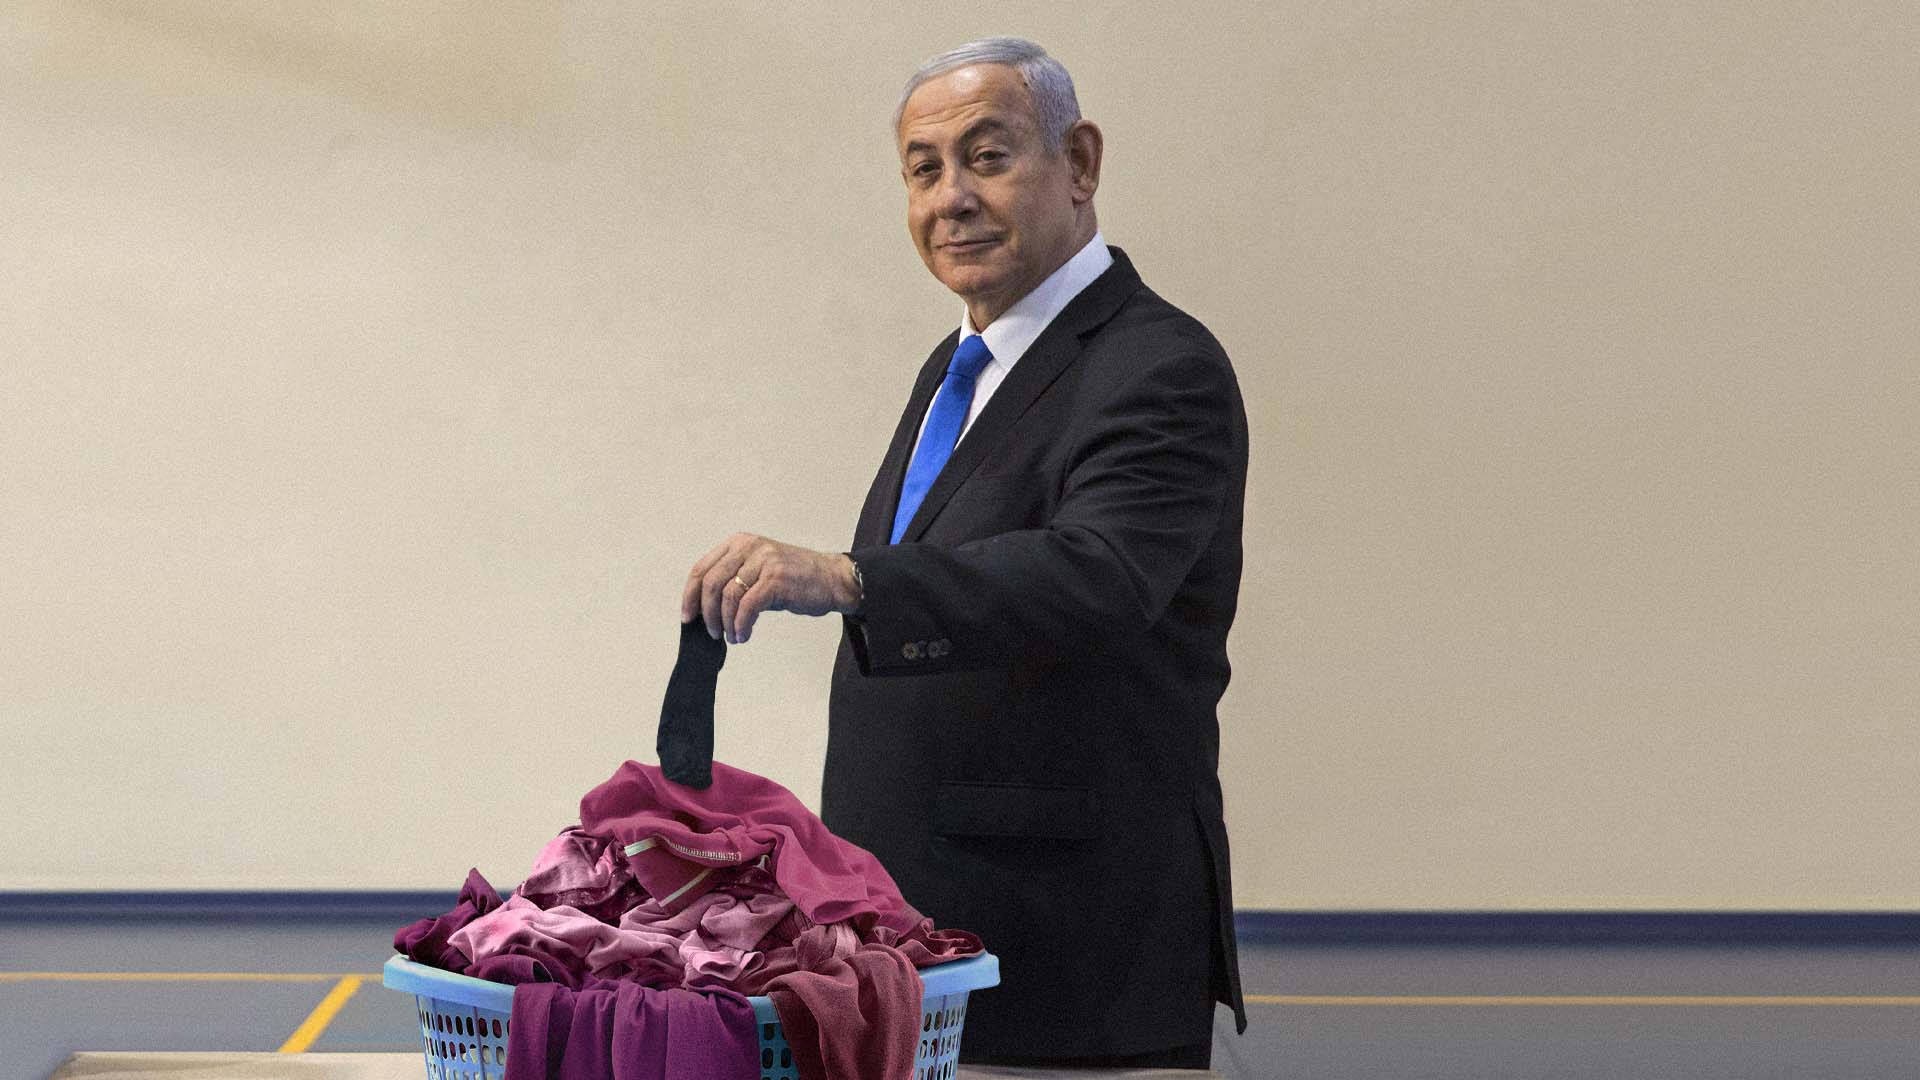 صورة نتنياهو يضع جورباً أسود مع غسيل إسرائيل الوردي